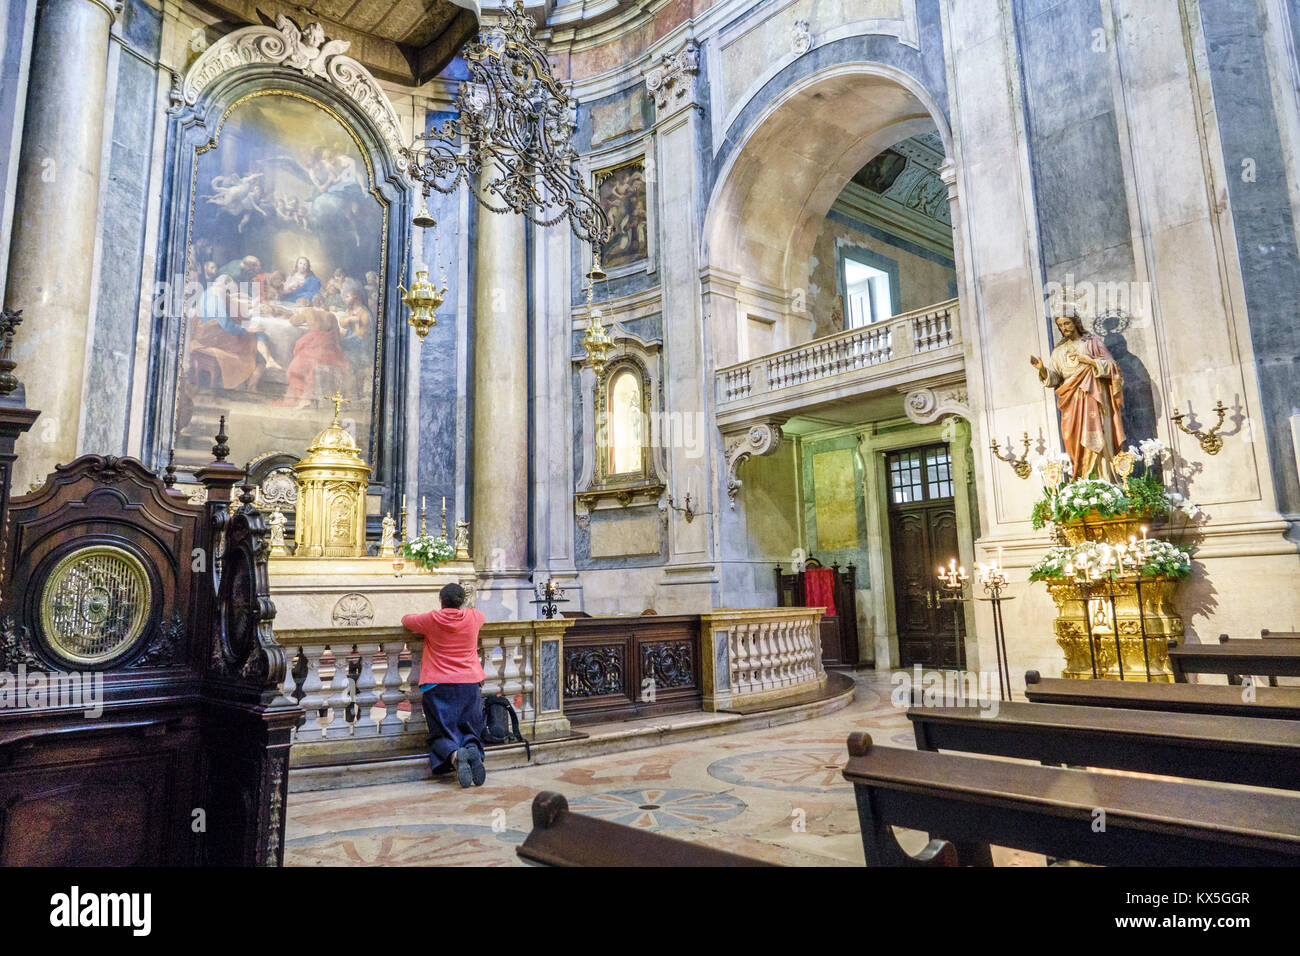 Lisbonne Portugal,Lapa,Basilica da Estrela,do Sagrado Coracao de Jesus,Couvent du coeur le plus sacré de Jésus,Catholique,Cathédrale,Baroque,néoclassique Banque D'Images